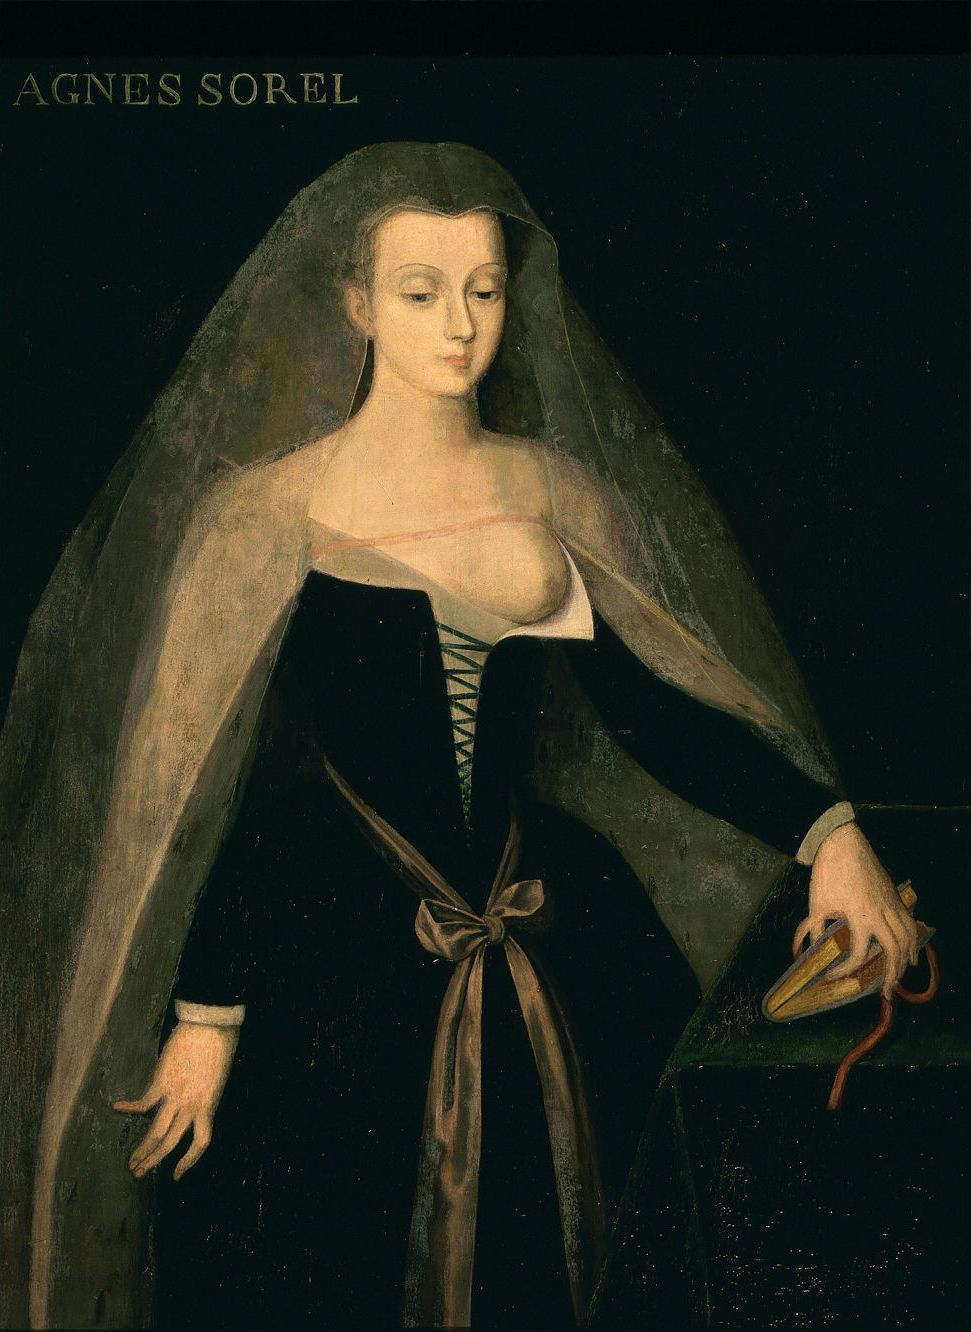 Philippe Comairas, "Agnès Sorel, dame de Beauté", 1834 r.